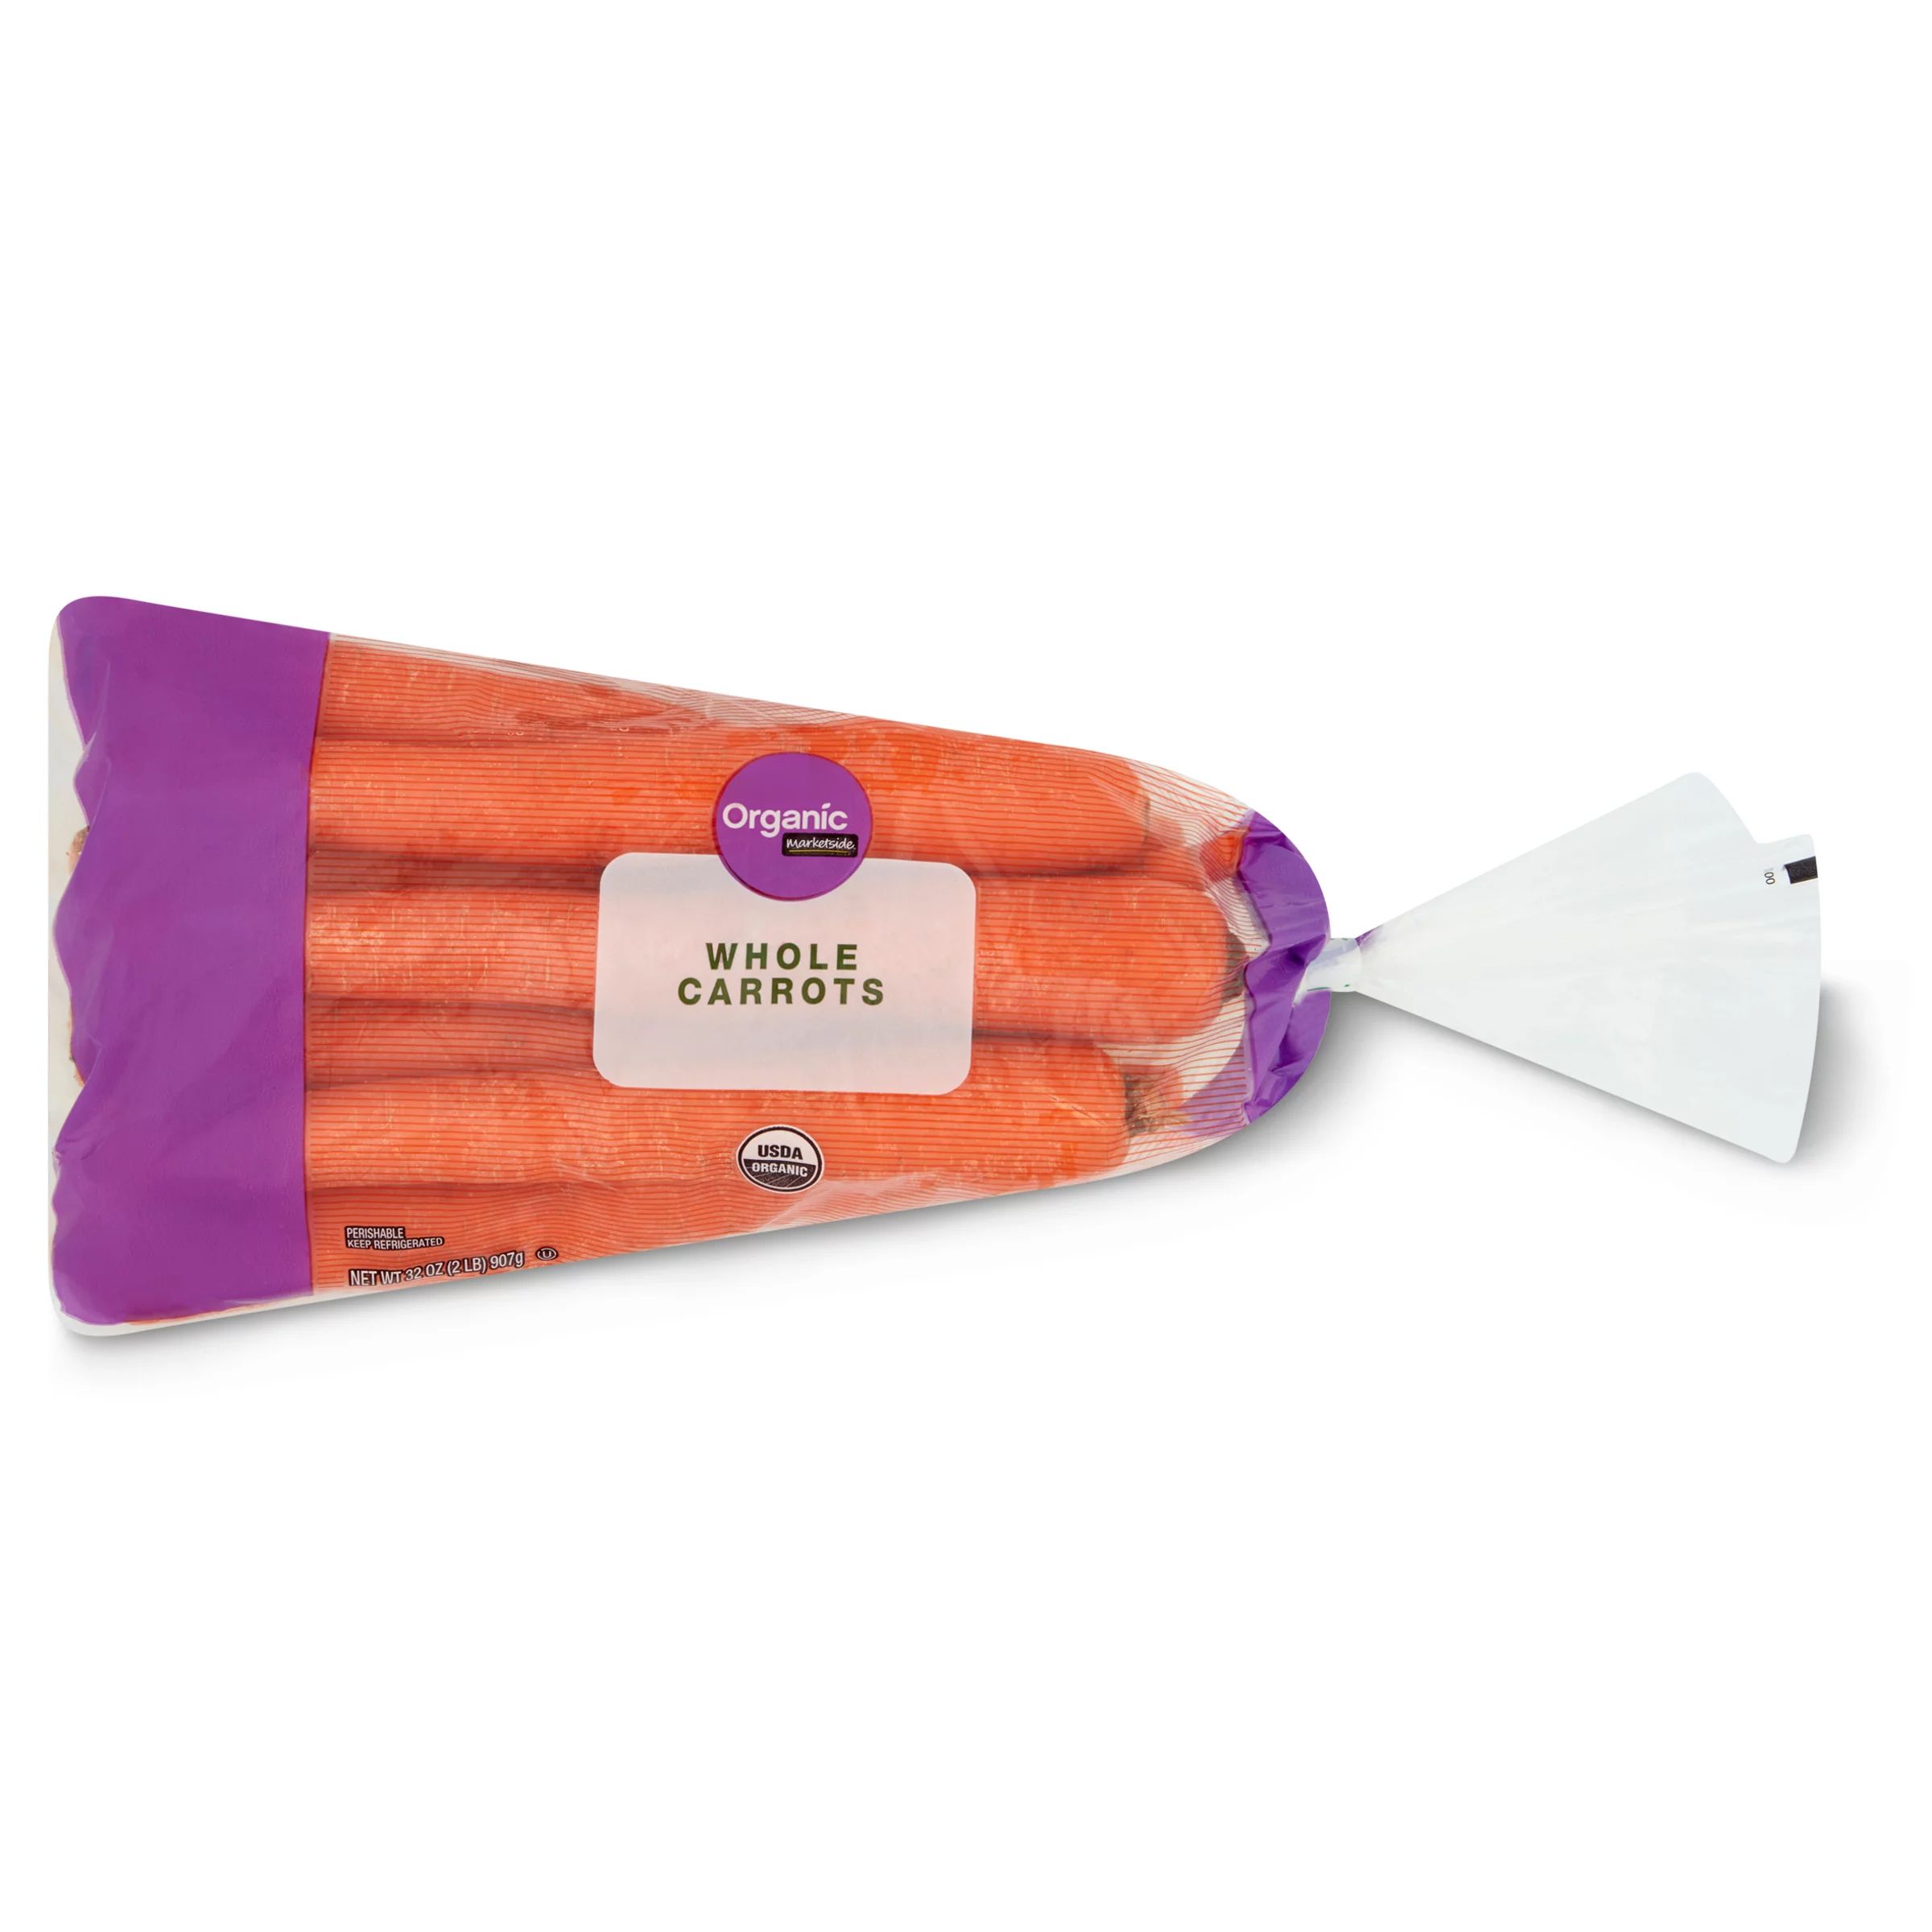 Organic Whole Carrots 2 Lb Bag - Walmart.com | Walmart (US)